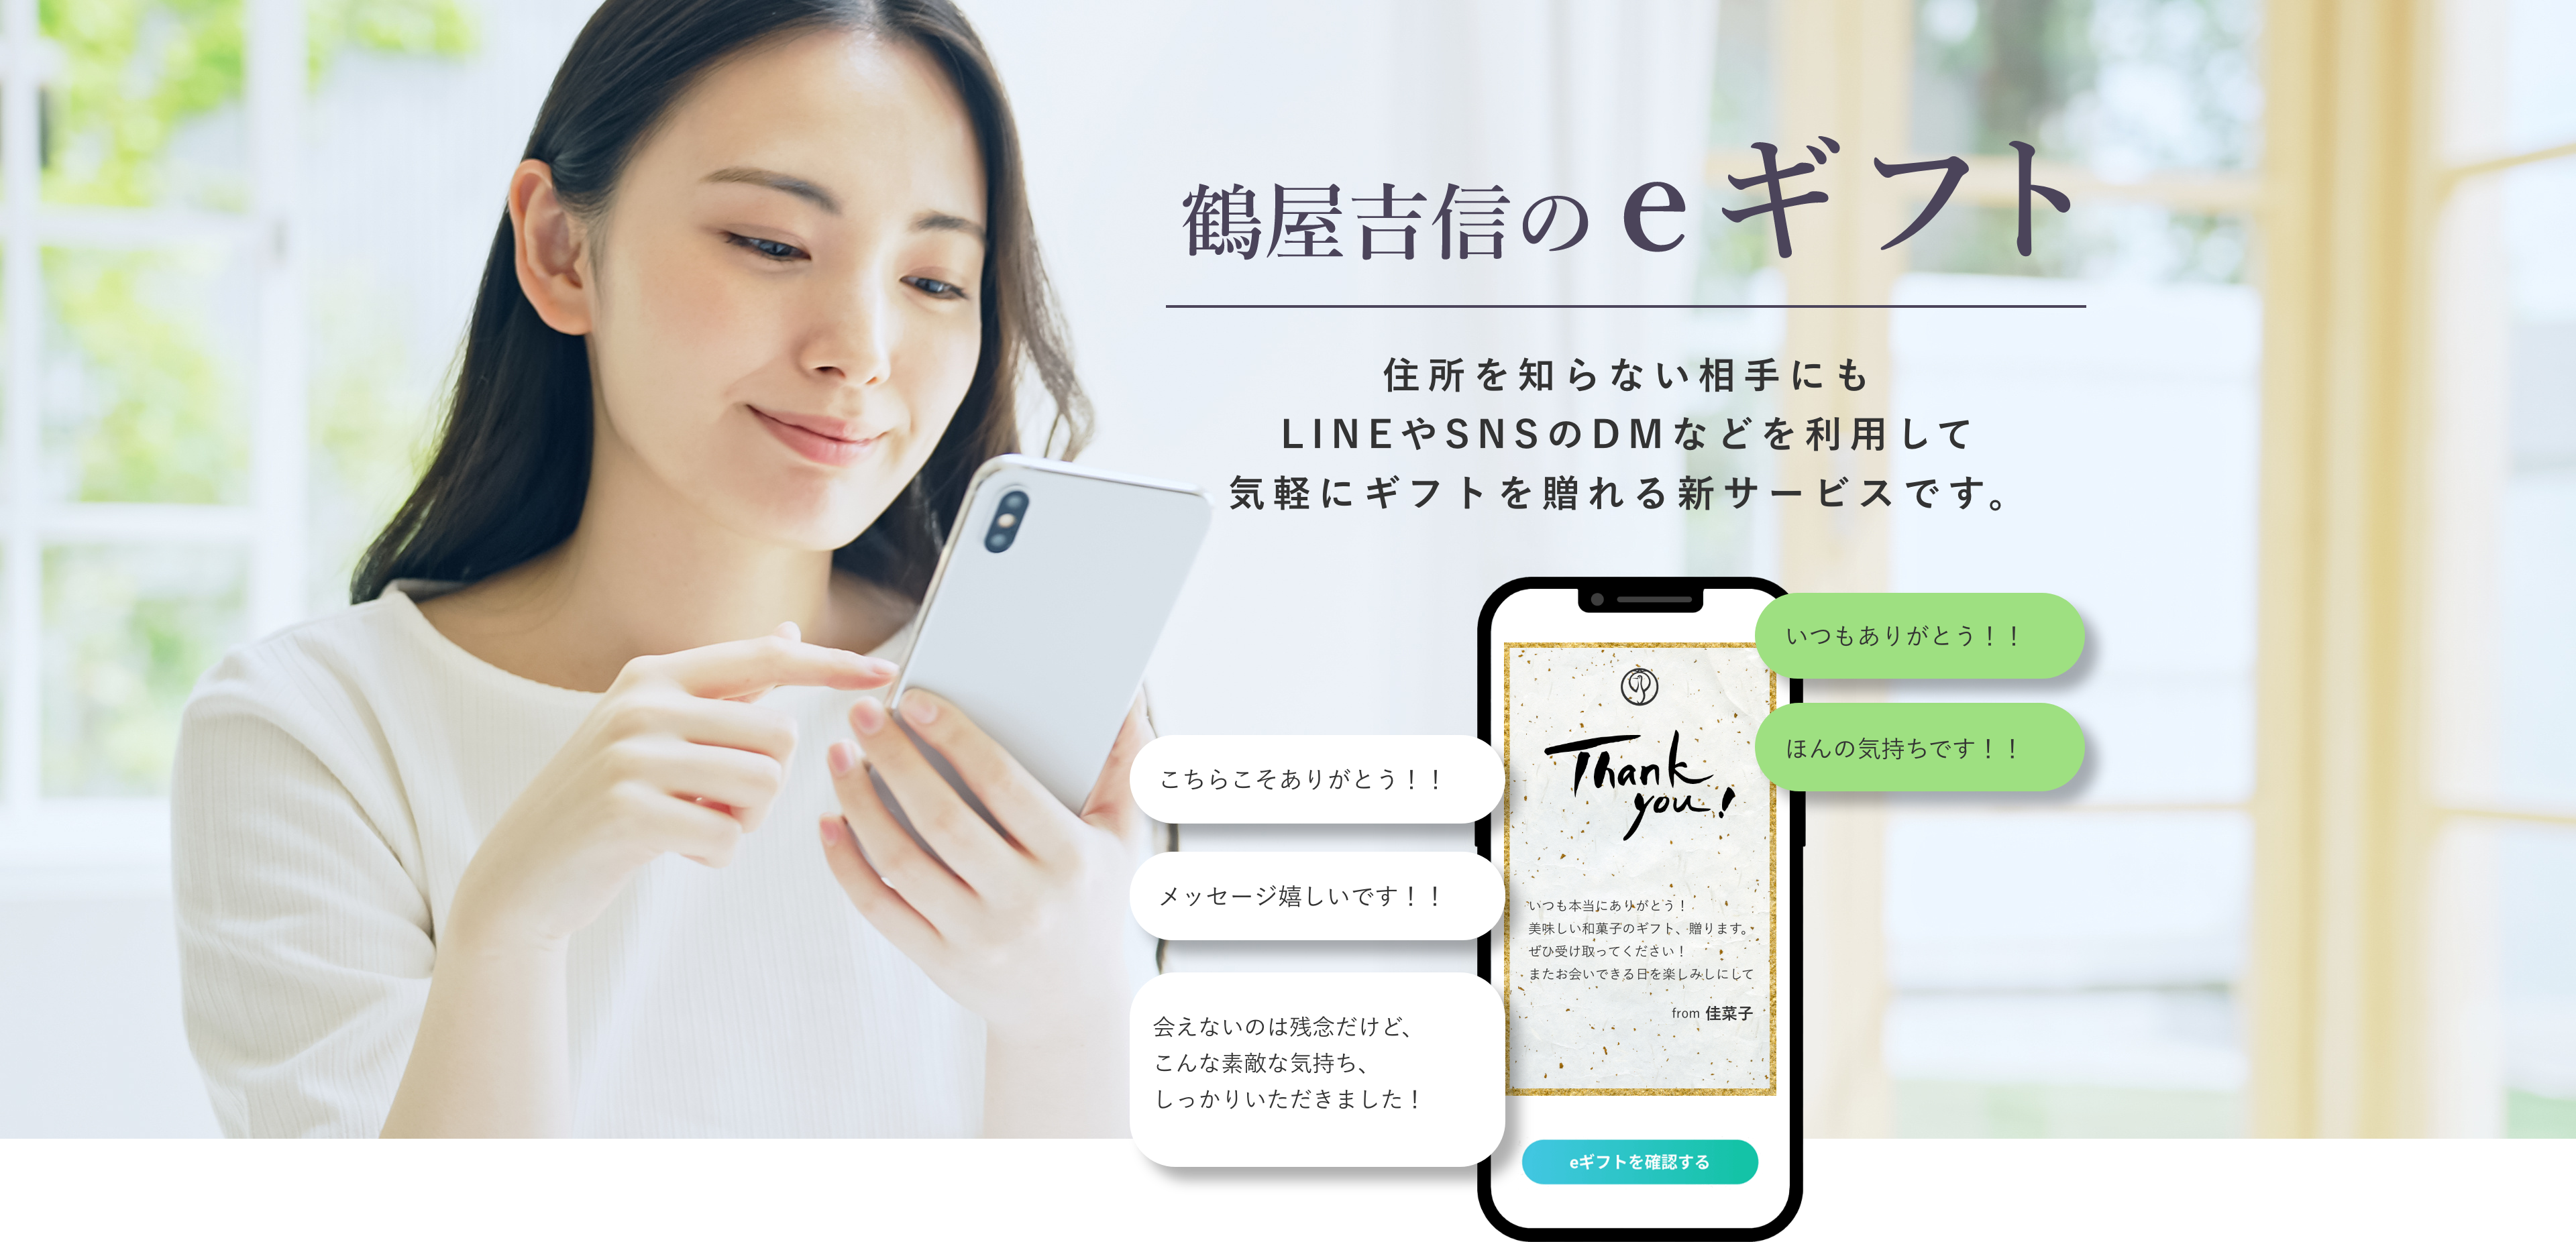 鶴屋吉信のeギフト　住所を知らない相手にもLINEやメール、SNSで気軽にギフトを贈れる新サービスです。